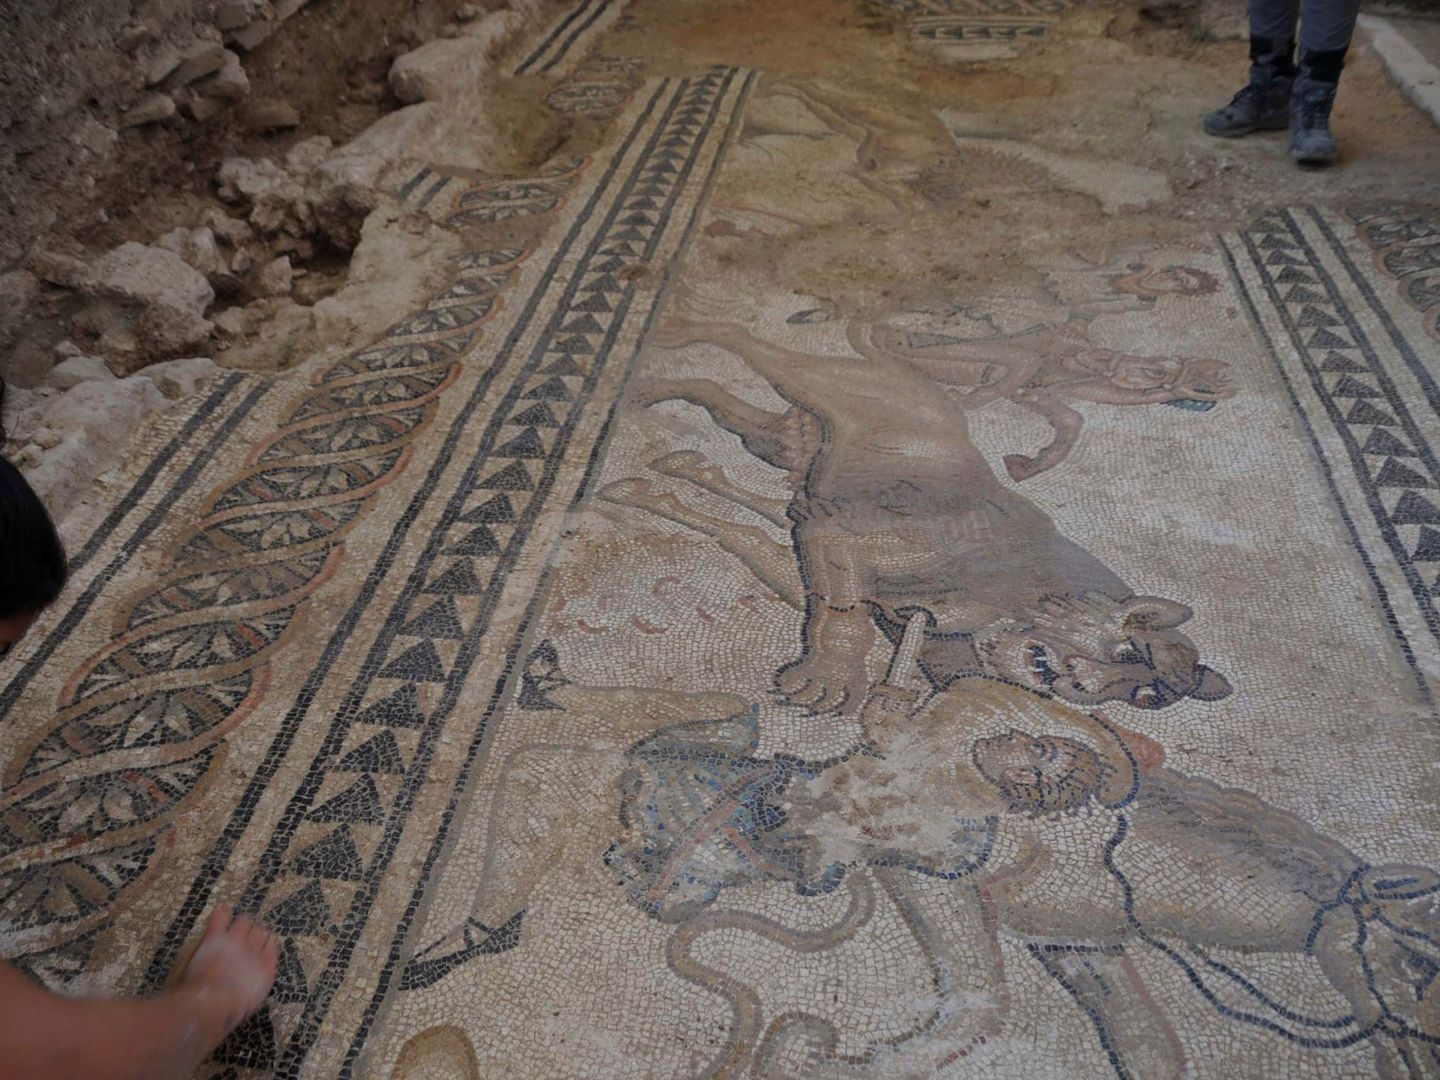 Detalle de uno de los mosaicos del yacimiento de Salar. (EFE/Yolanda Aguilera Delgado)